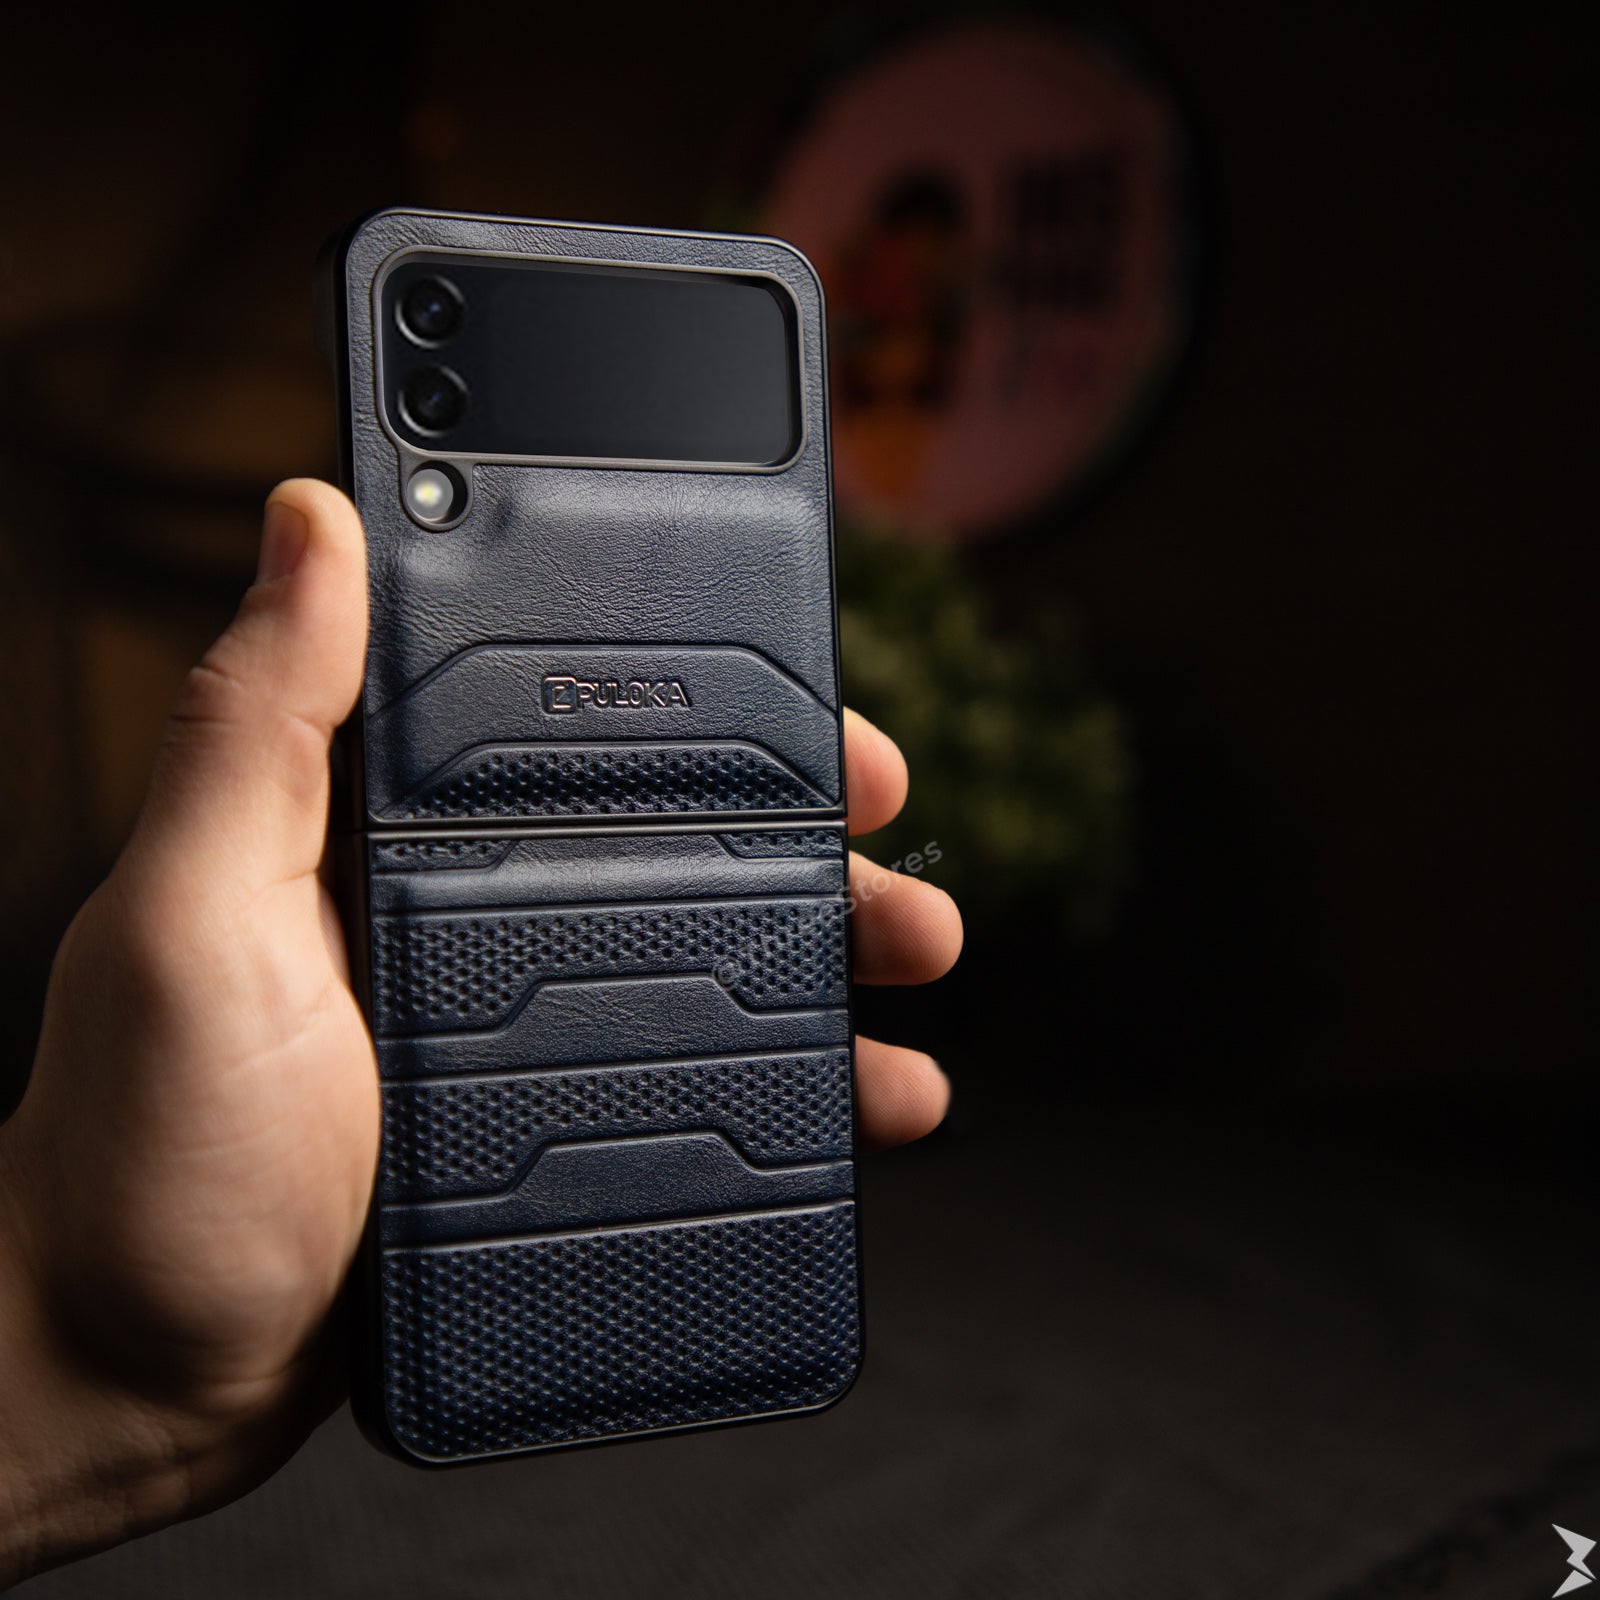 Puloka Dots Leather Case Samsung Z Flip 3